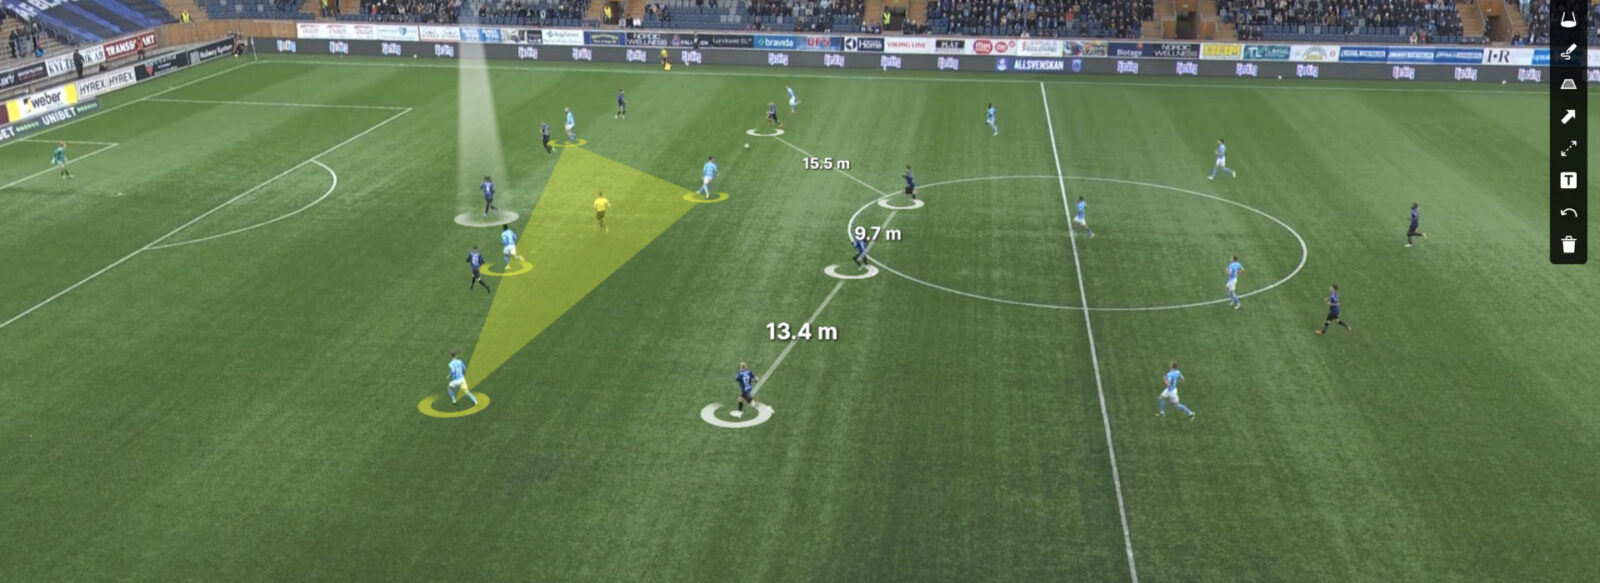 Intelligence Artificielle et Analyse Vidéo.entrainement football 